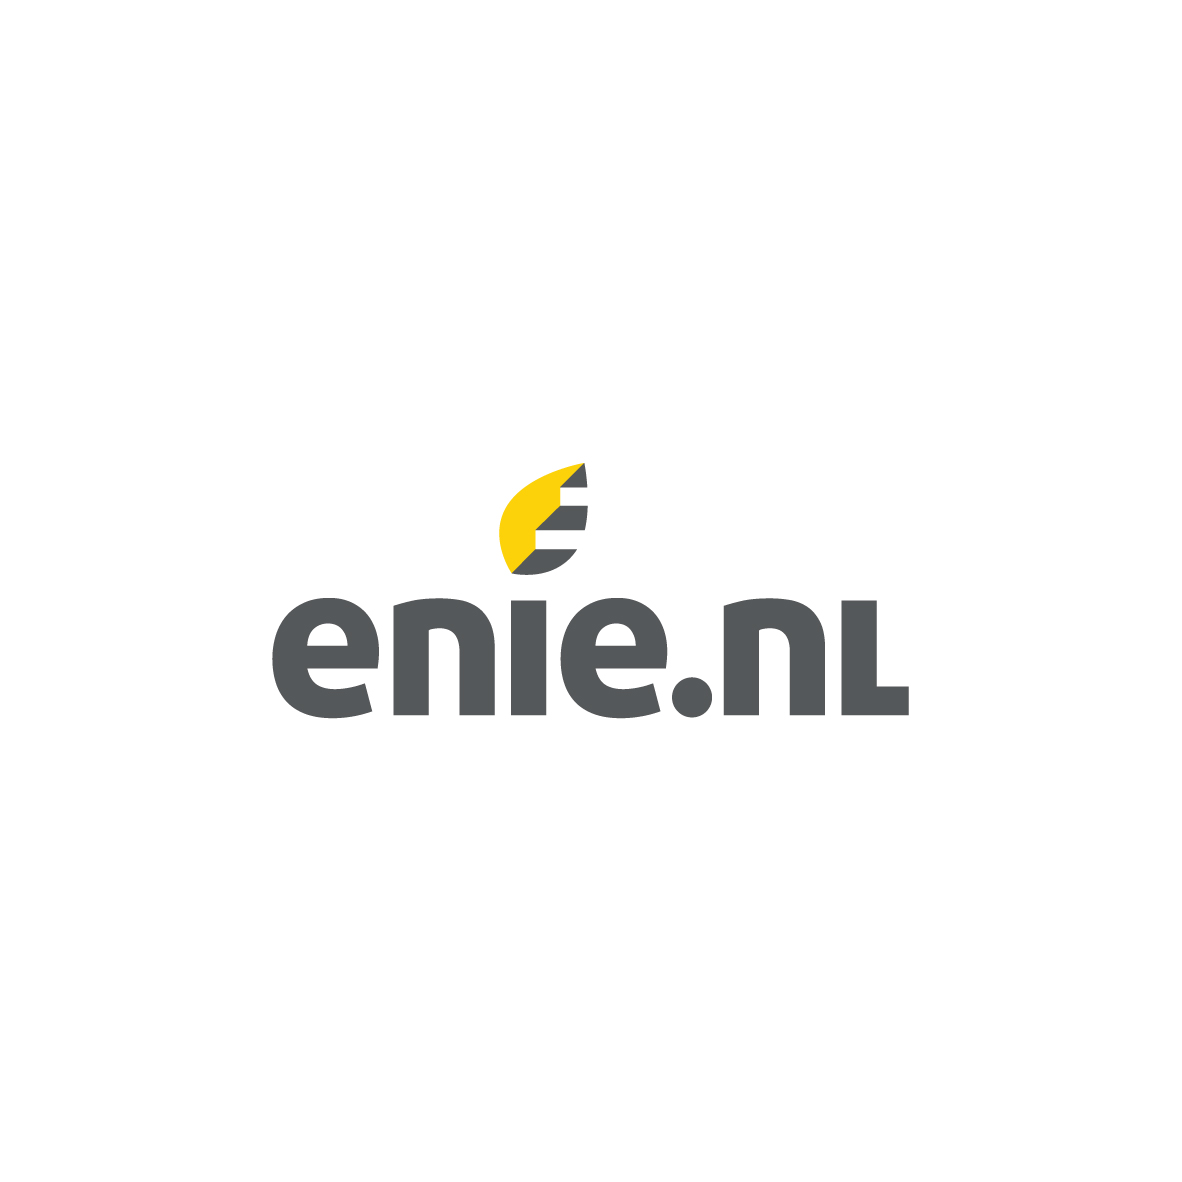 Enie.nl's logo